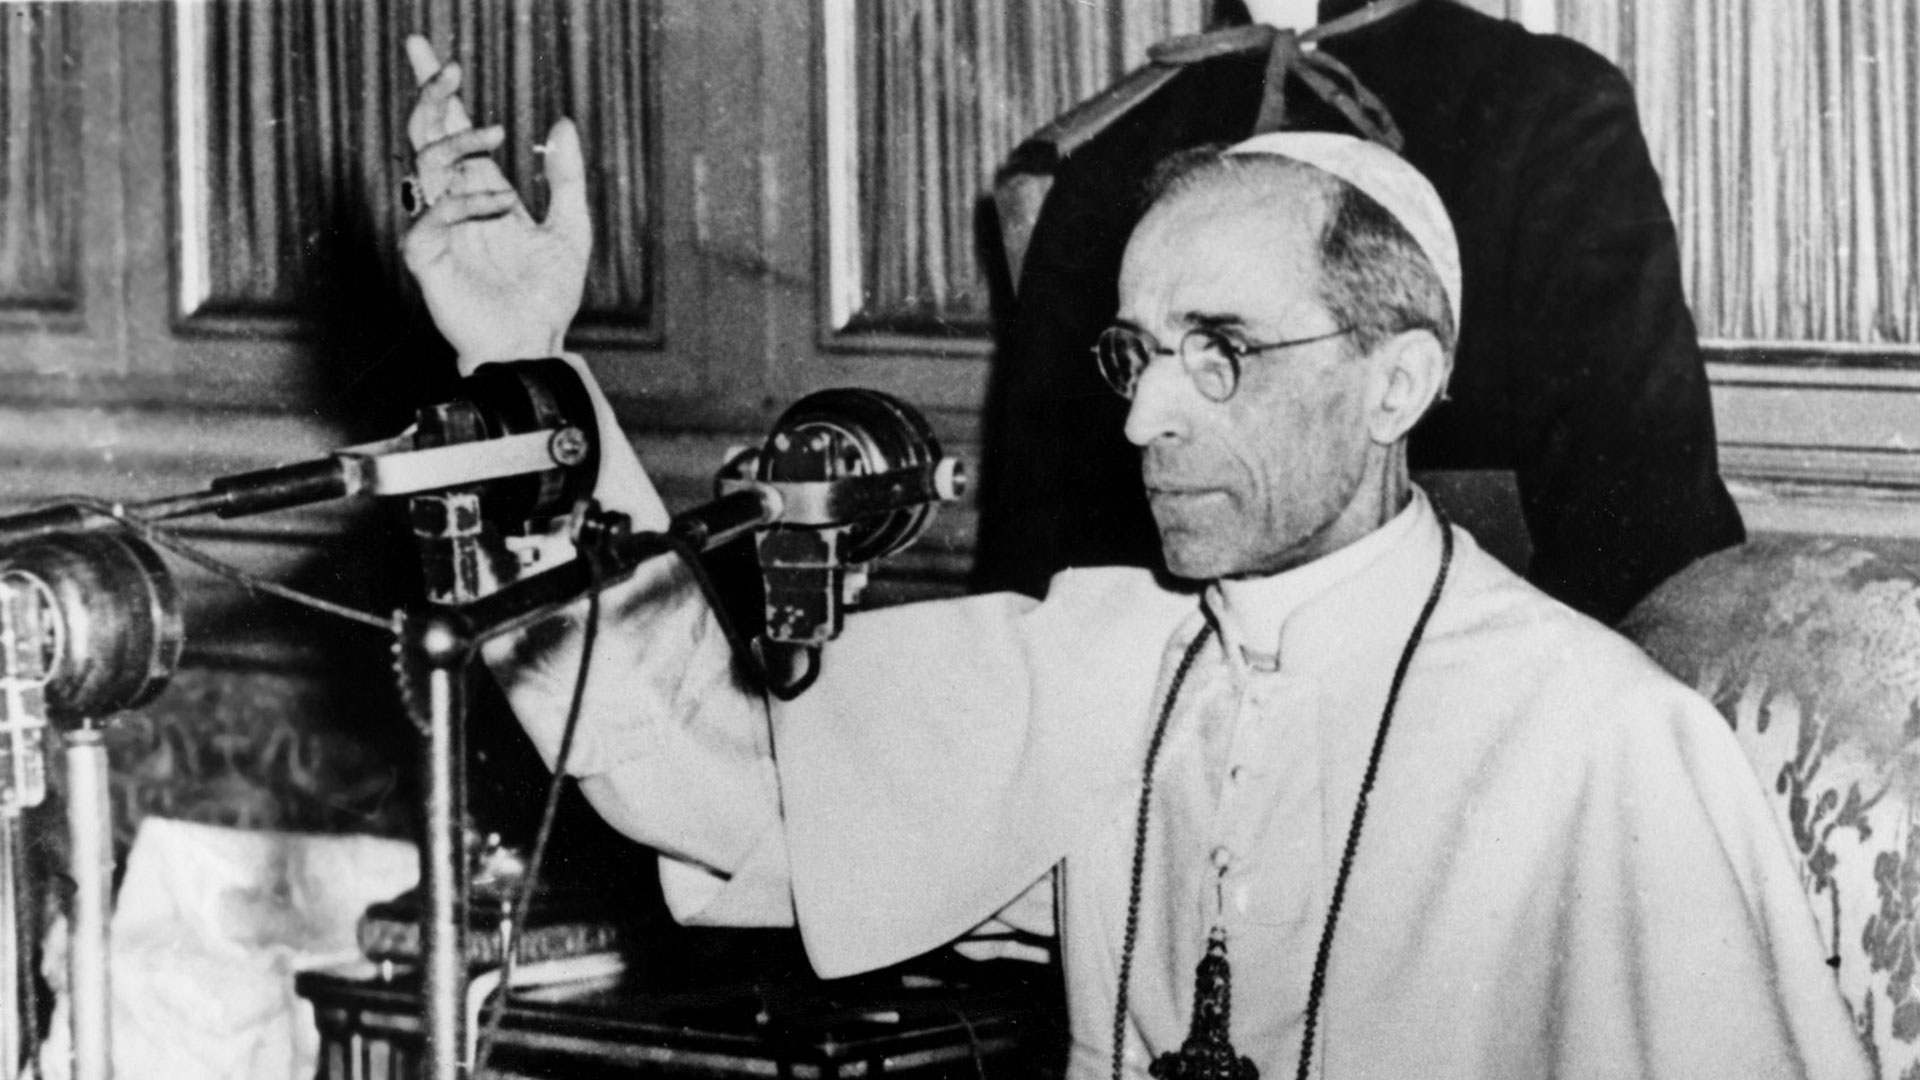 Sejarawan Hubert Wolf mengatakan bahwa Paus Pius XII takut akan kemajuan komunisme, yang dia anggap sebagai ancaman terbesar bagi Gereja Katolik, dan untuk alasan ini dia akan meminjamkan dirinya untuk memfasilitasi pelarian Nazi.